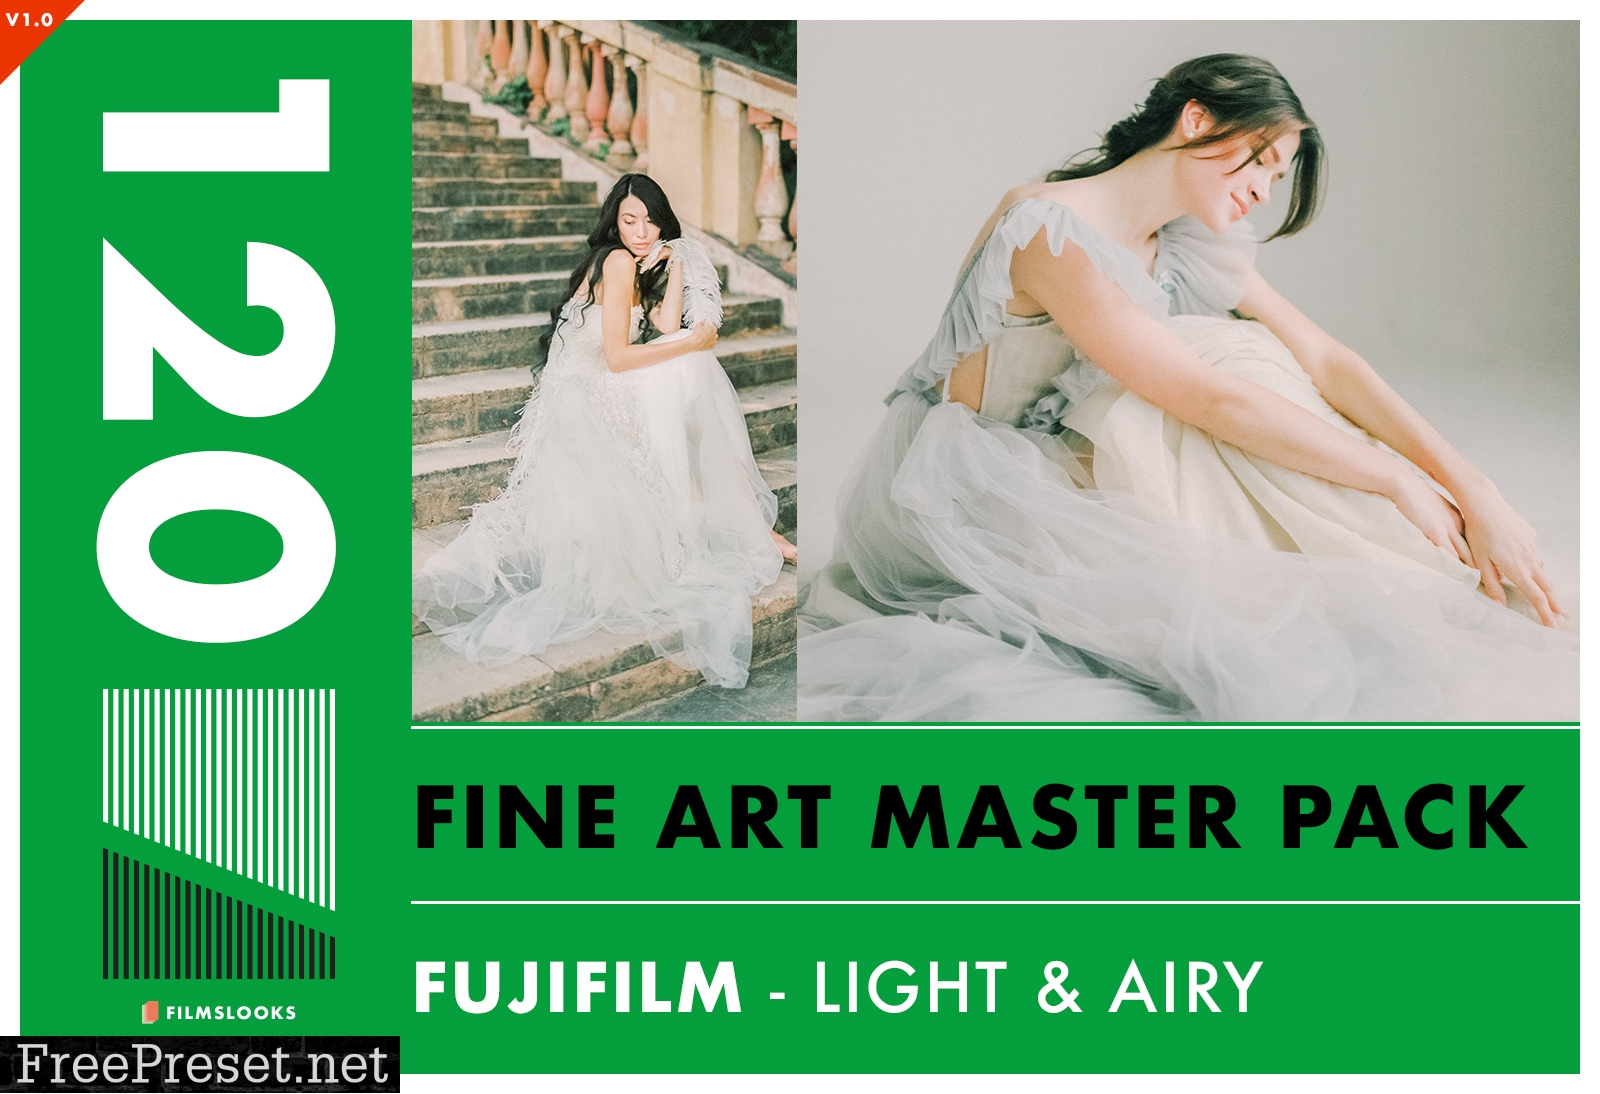 FilmsL00ks - Fujifilm Master Pack